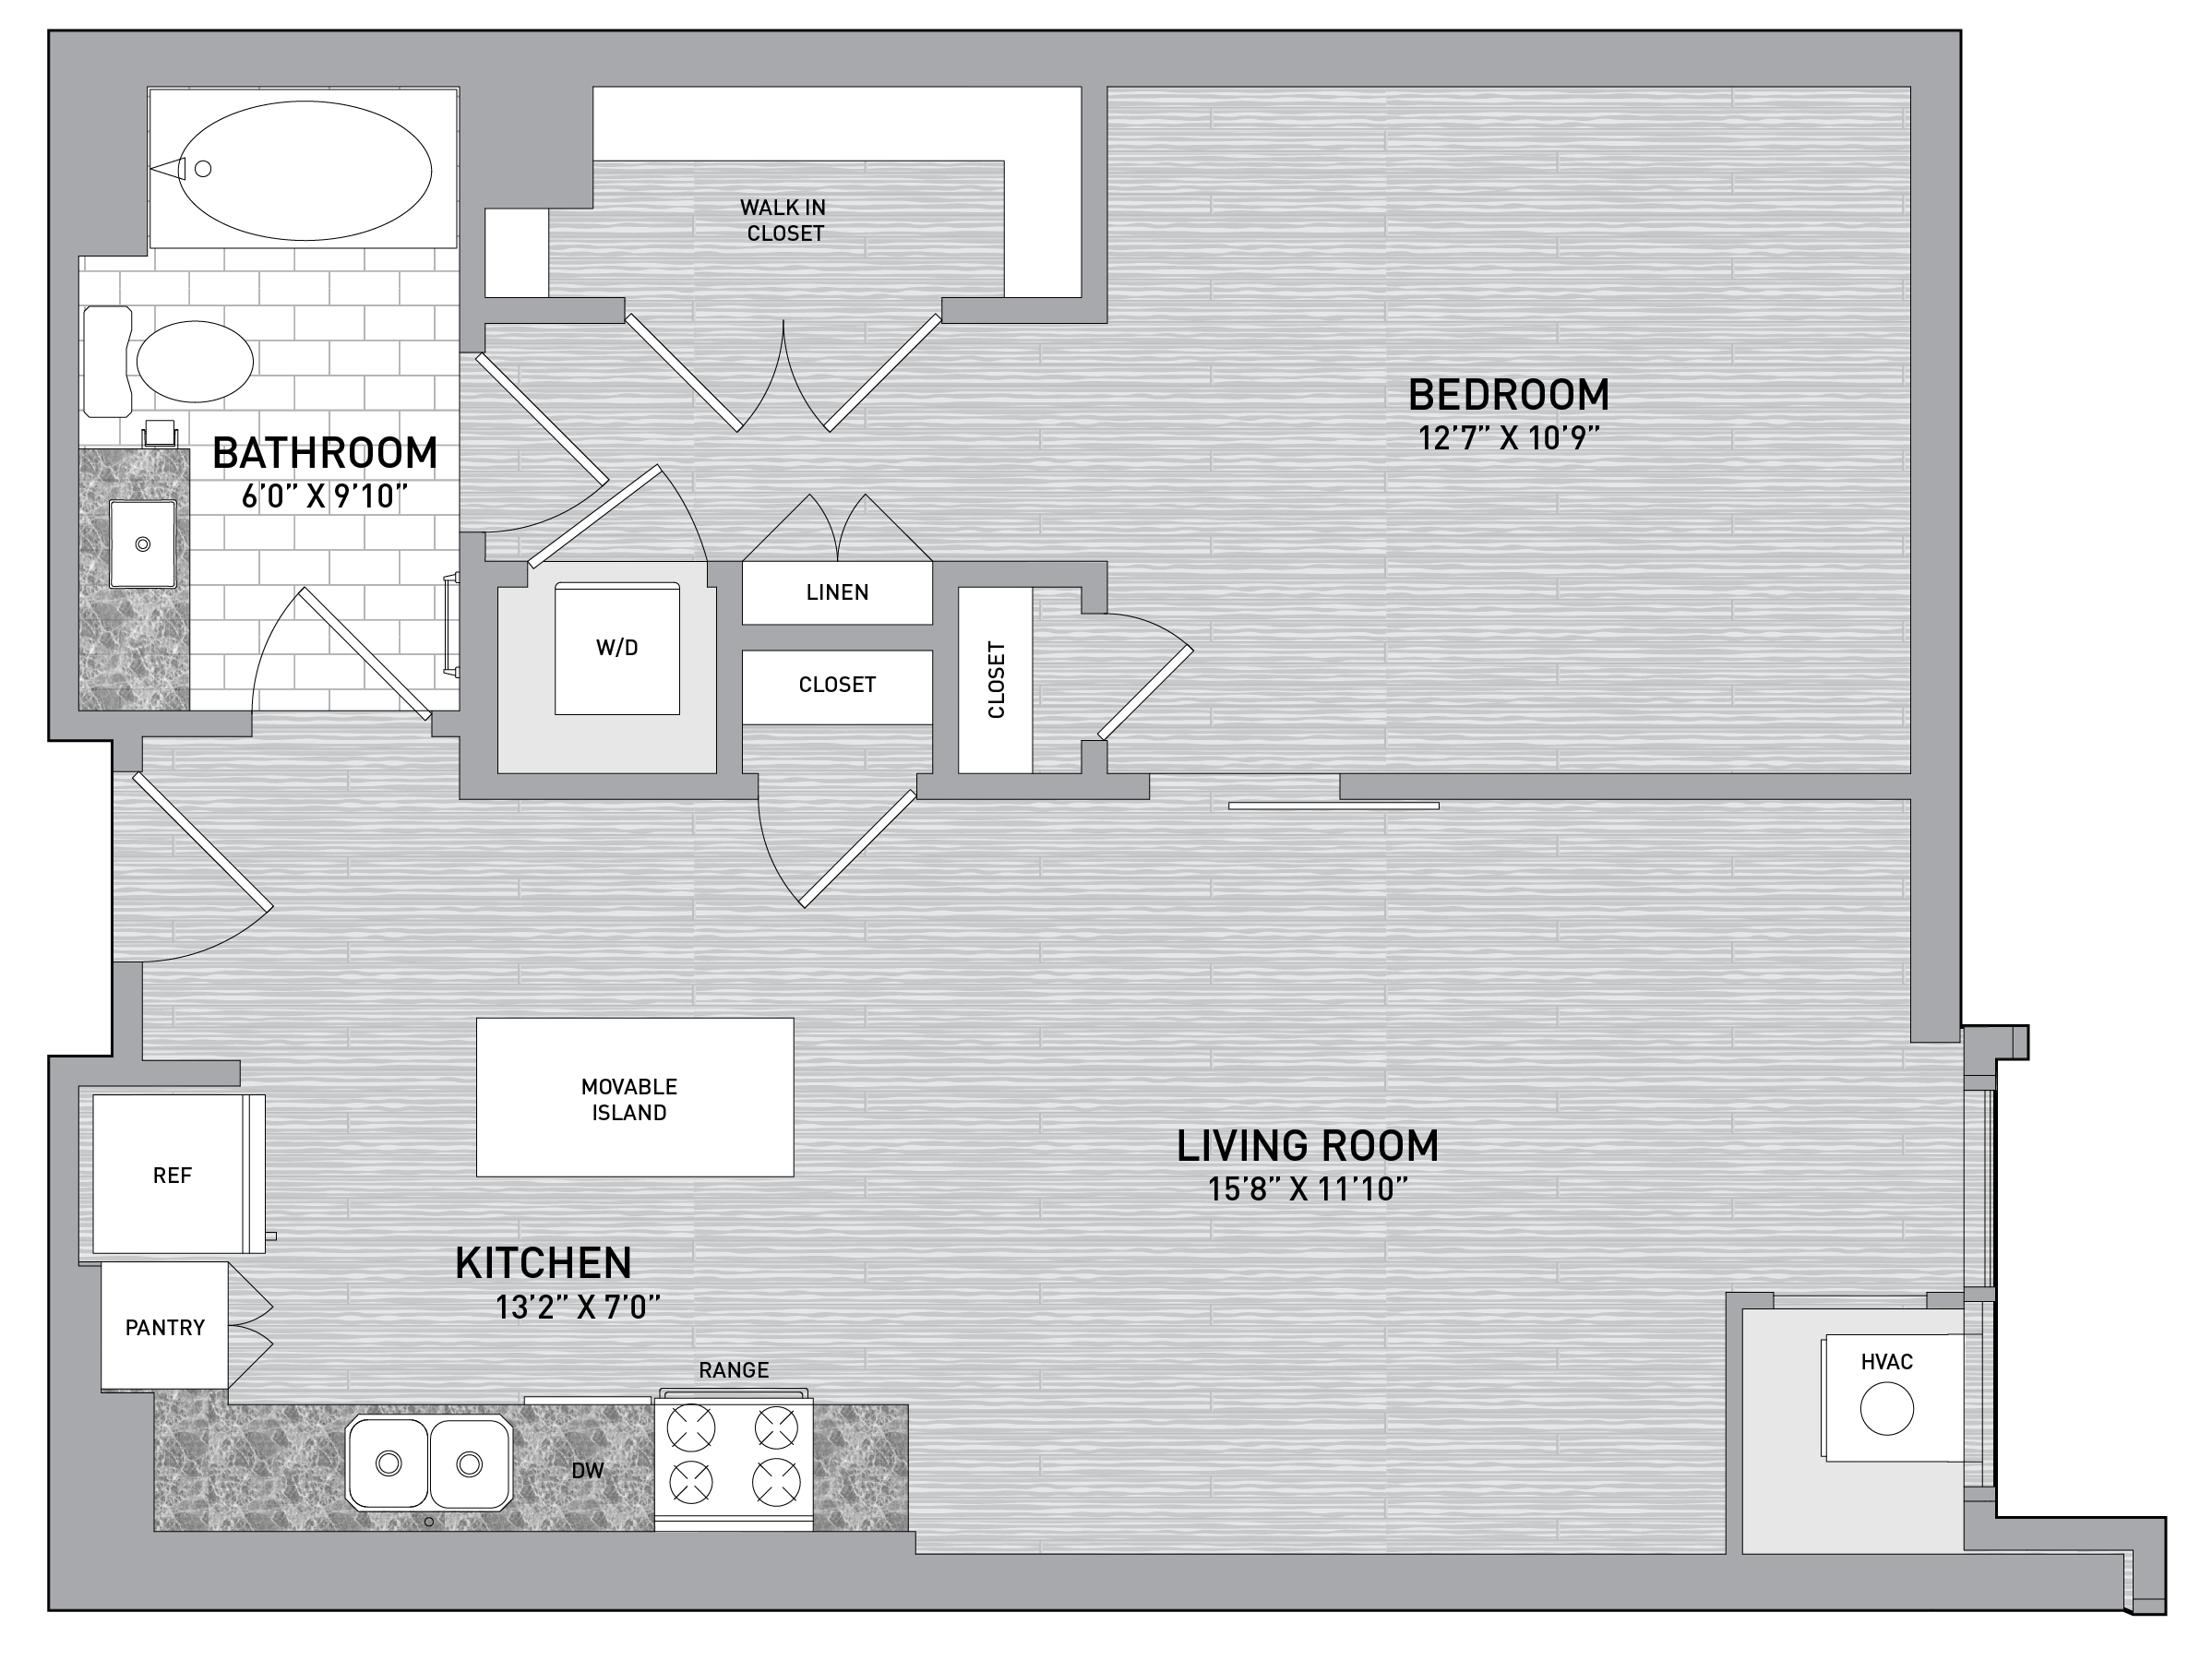 floorplan image of unit id 0321